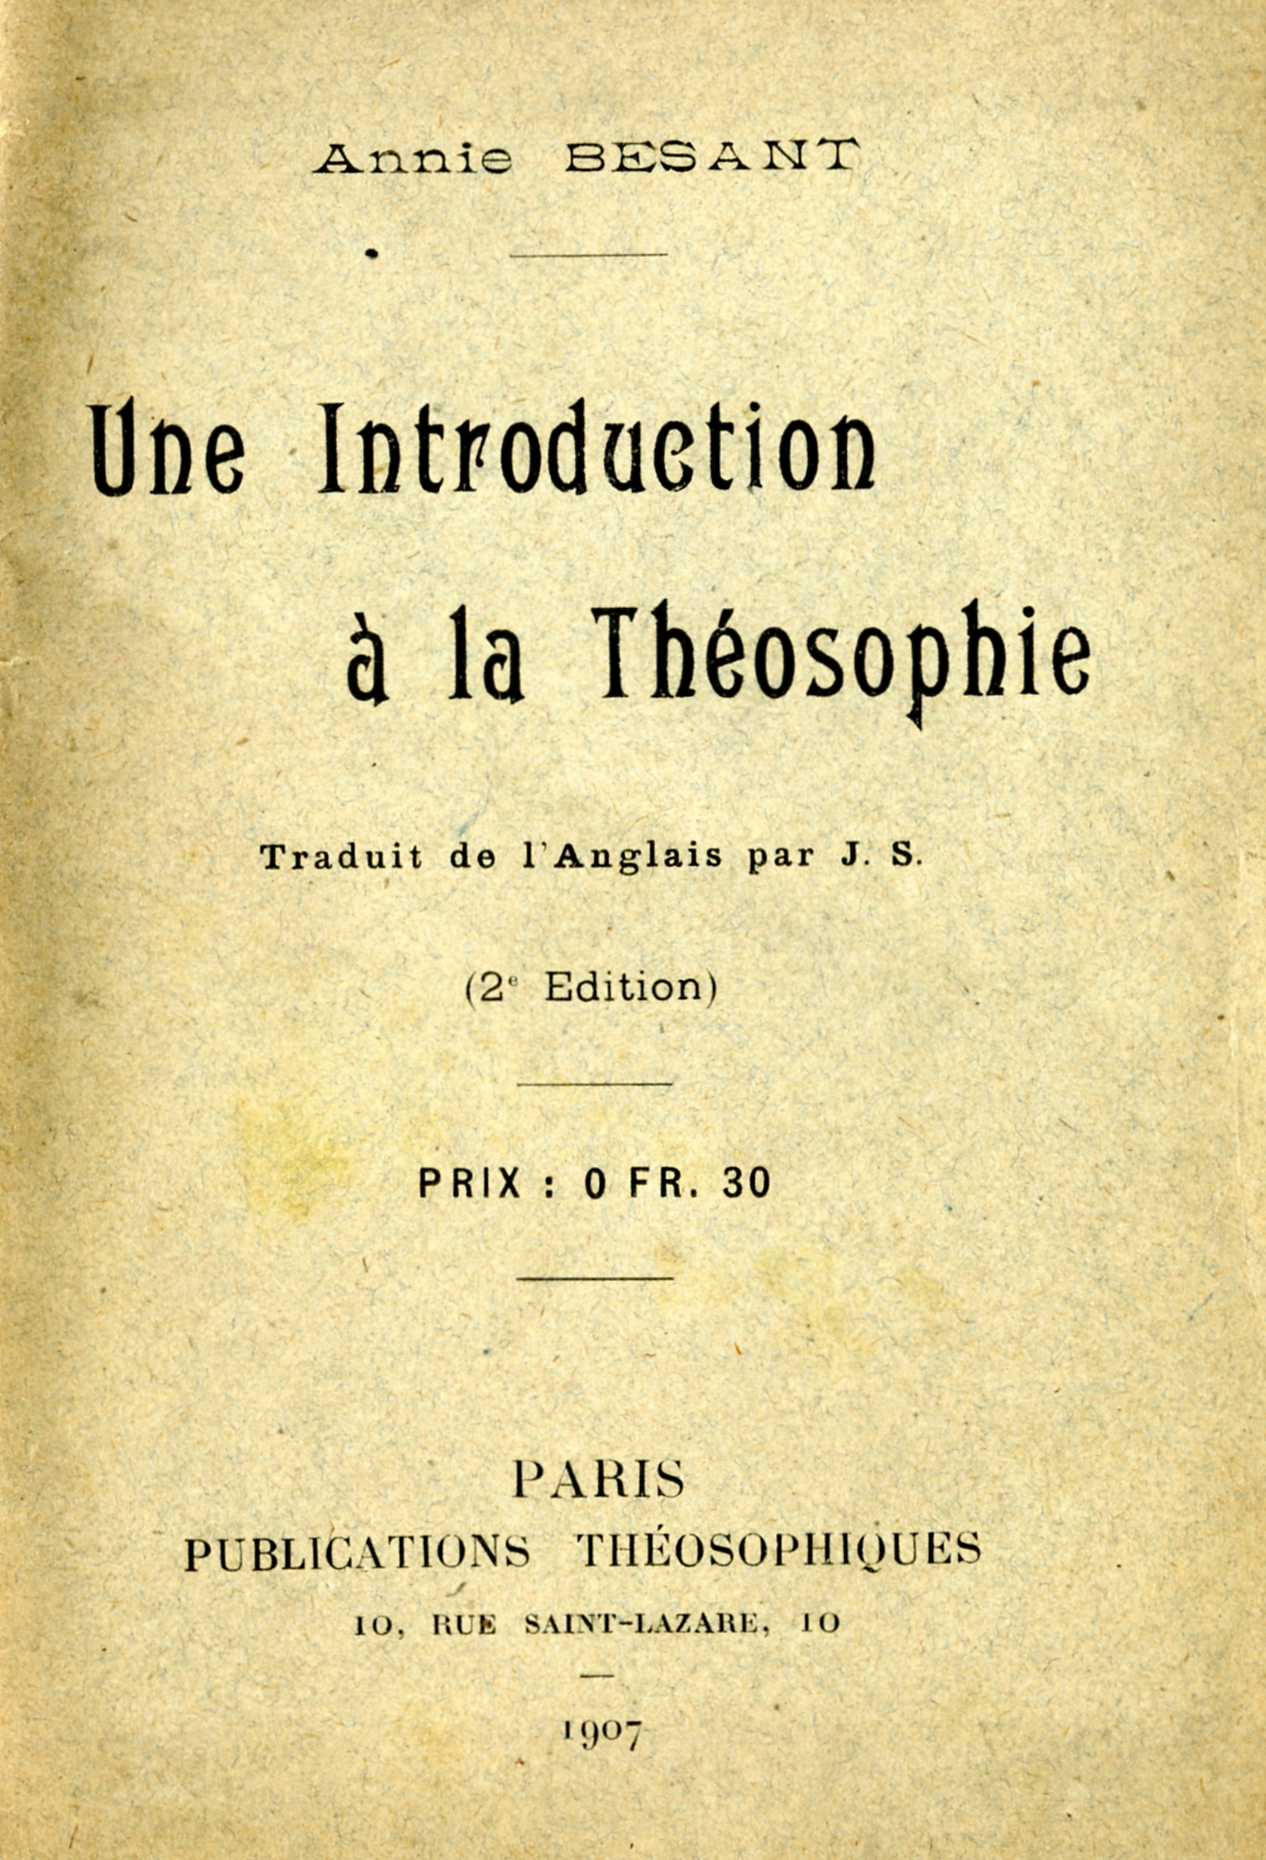 Annie Besant, Introduction
          a la Théosophie, París, 1907.